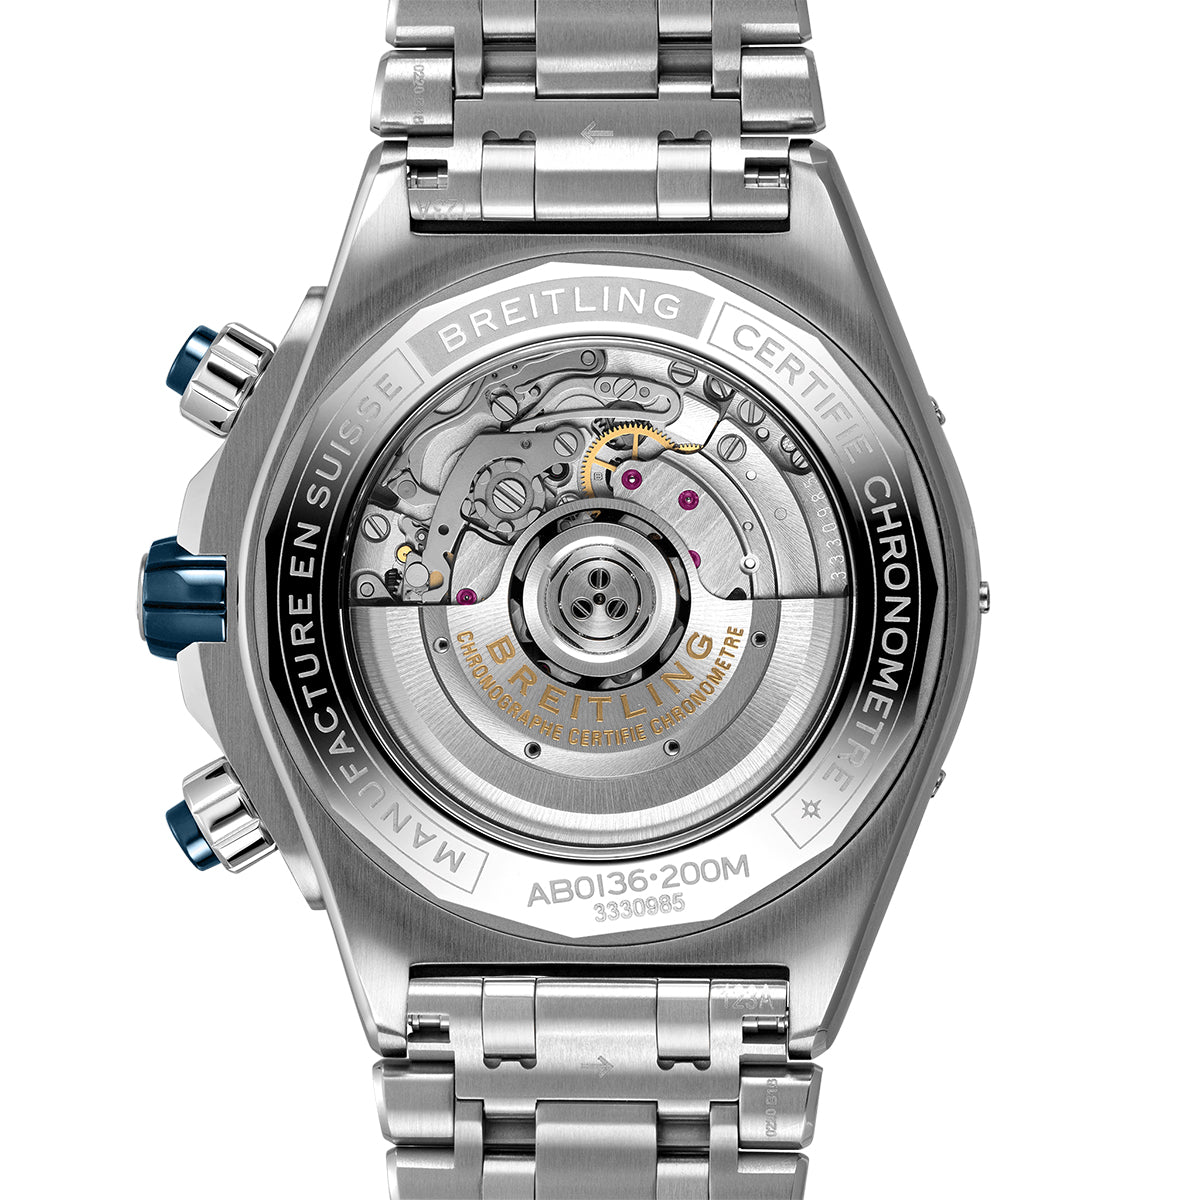 Breitling Super Chronomat B01 Stainless Steel Men's Watch